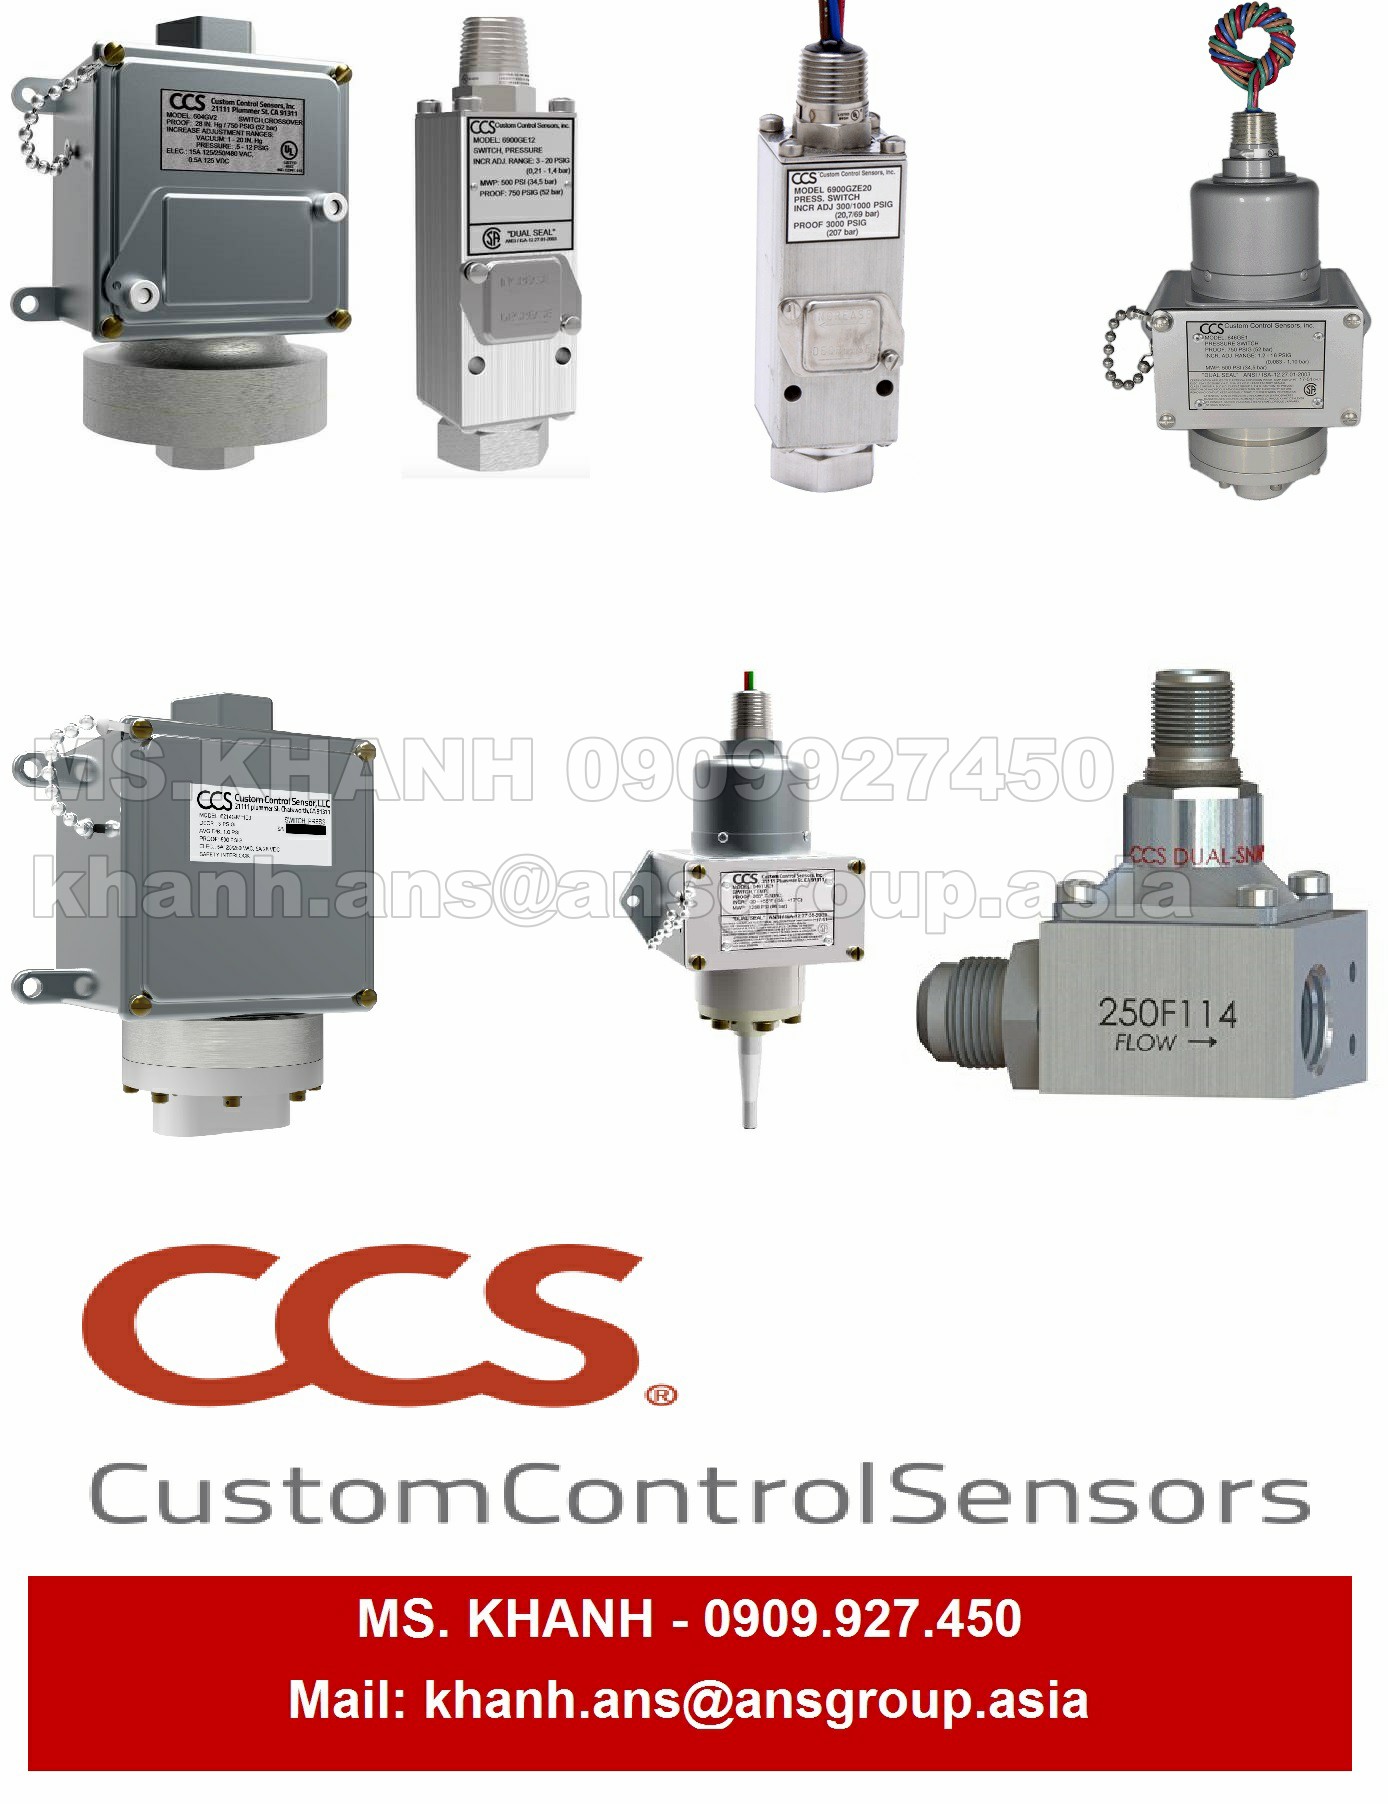 cam-bien-ap-suat-ccs-604gzm3-7011-pressure-sensor.png